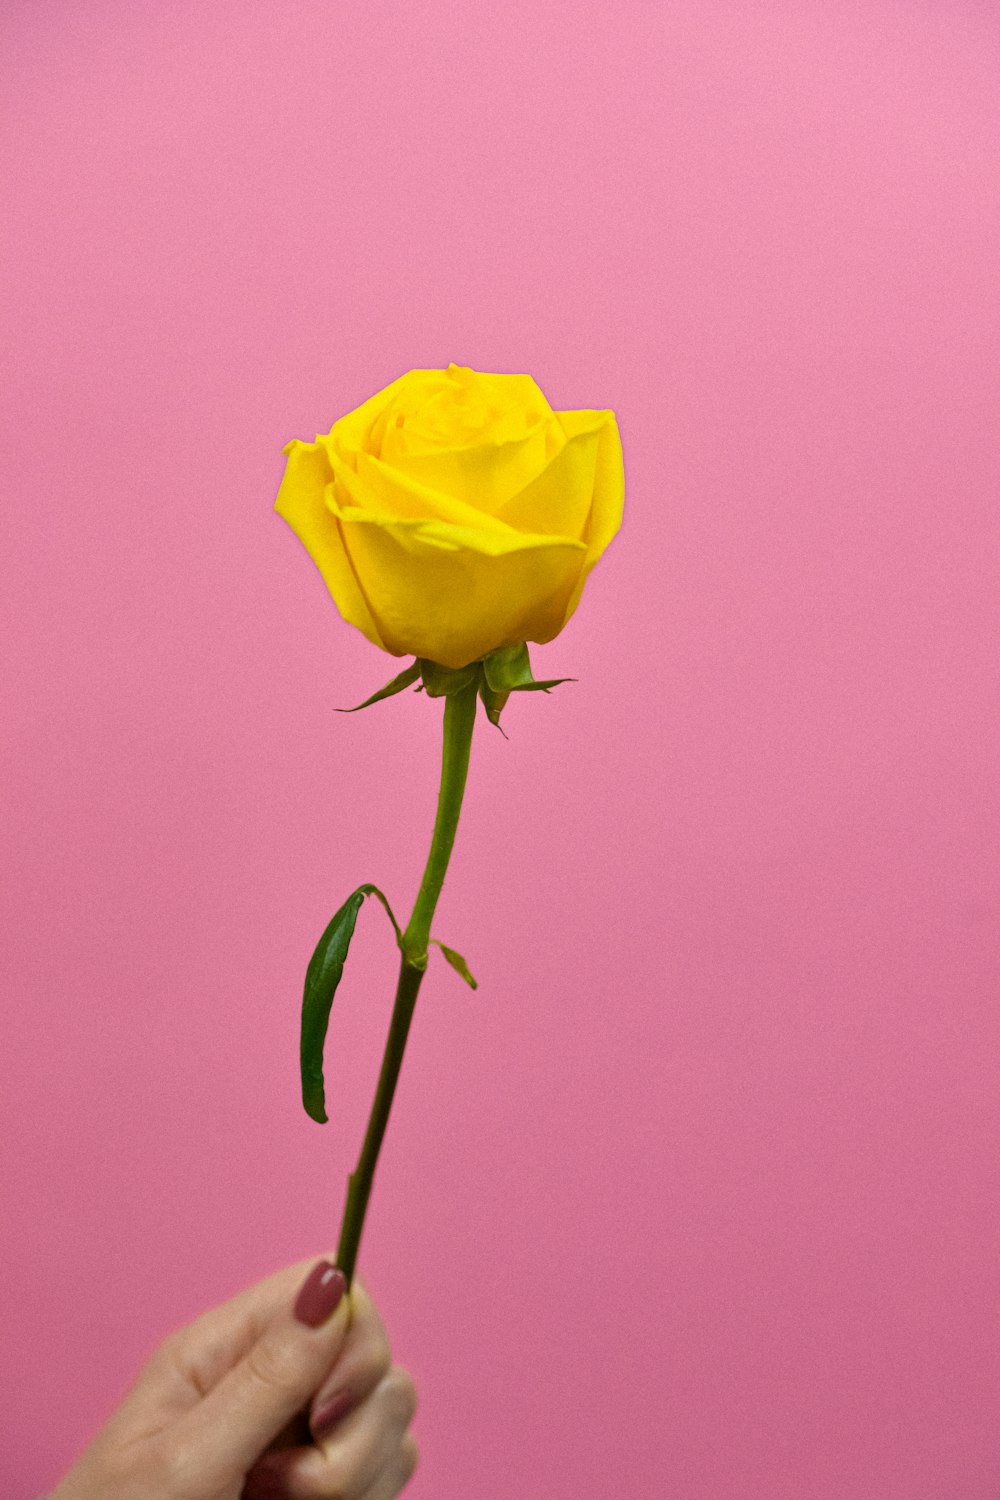 rosa amarela em flor close up foto